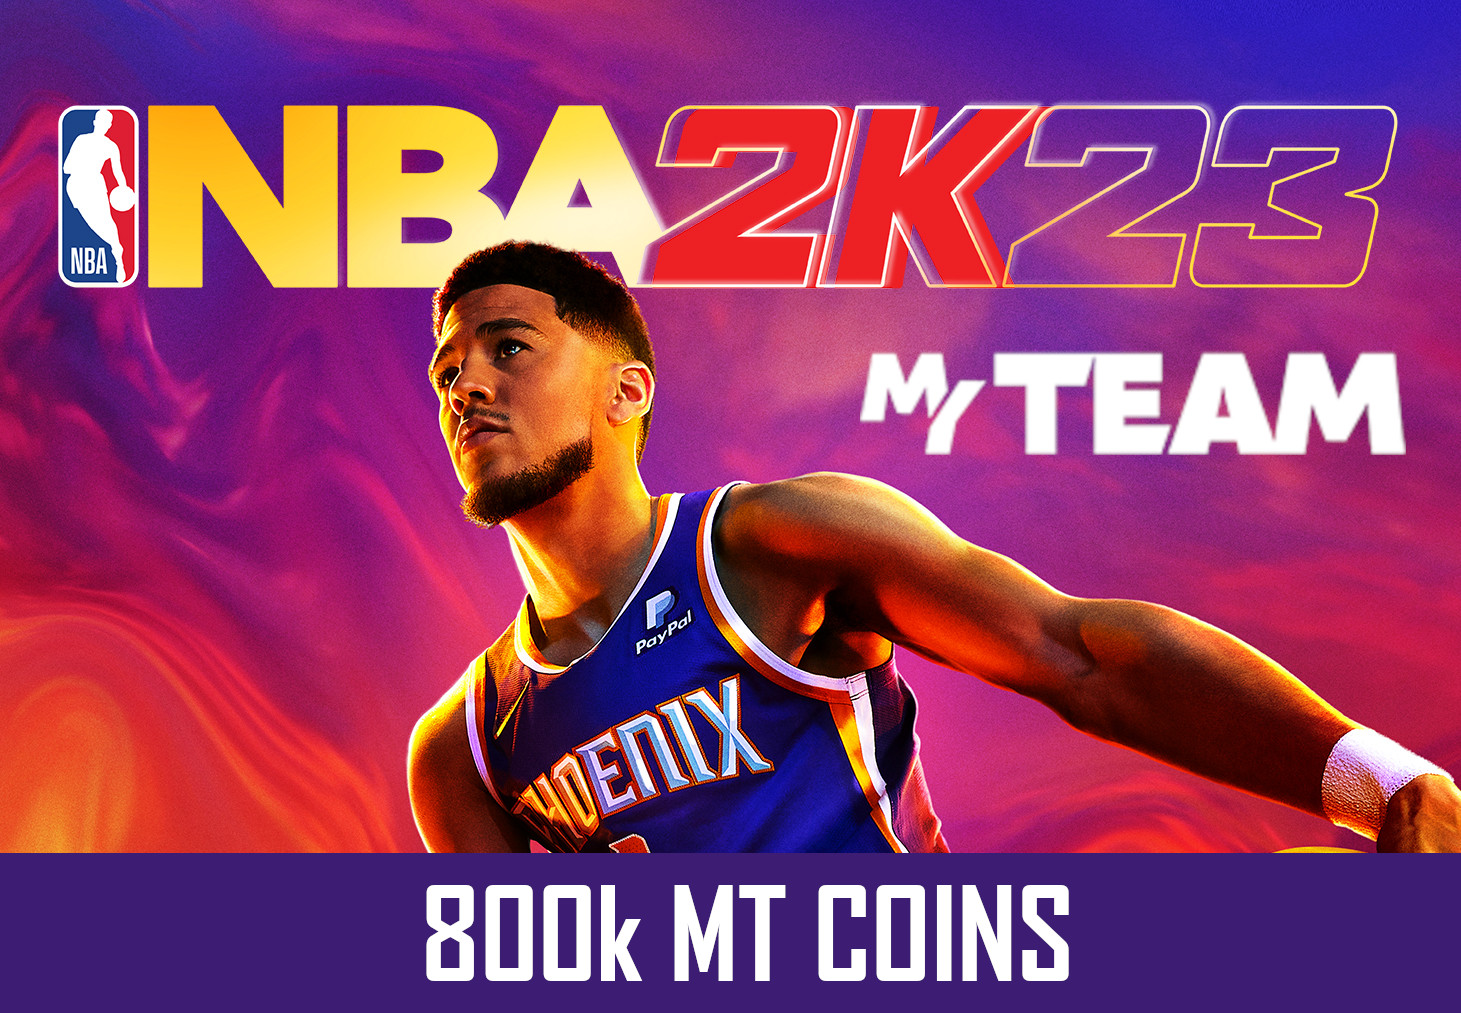 NBA 2K23 - 800k MT Coins - GLOBAL XBOX One/Series X,S